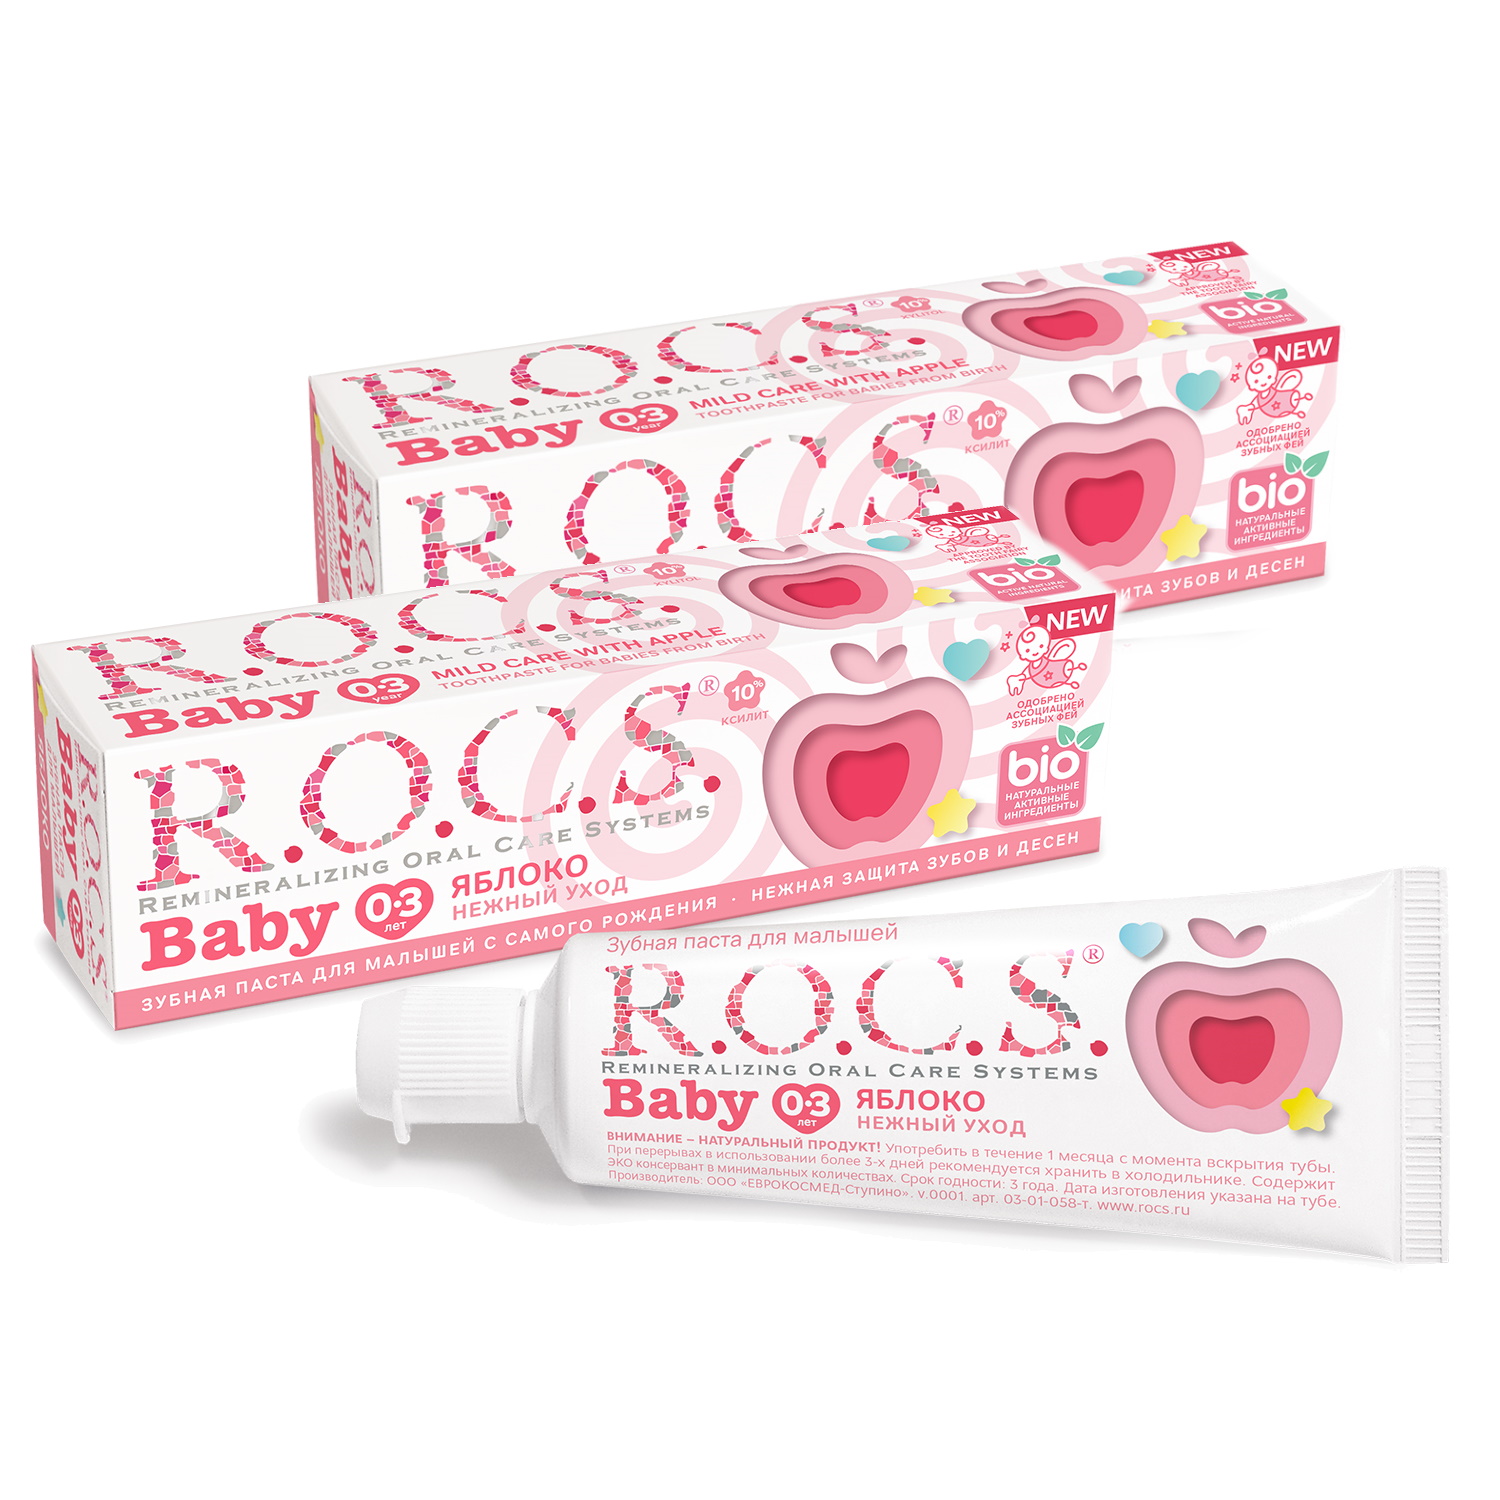 Зубная паста для малышей R.O.C.S. BABY НЕЖНЫЙ УХОД яблоко, 45 гр (в наборе 2 штуки)